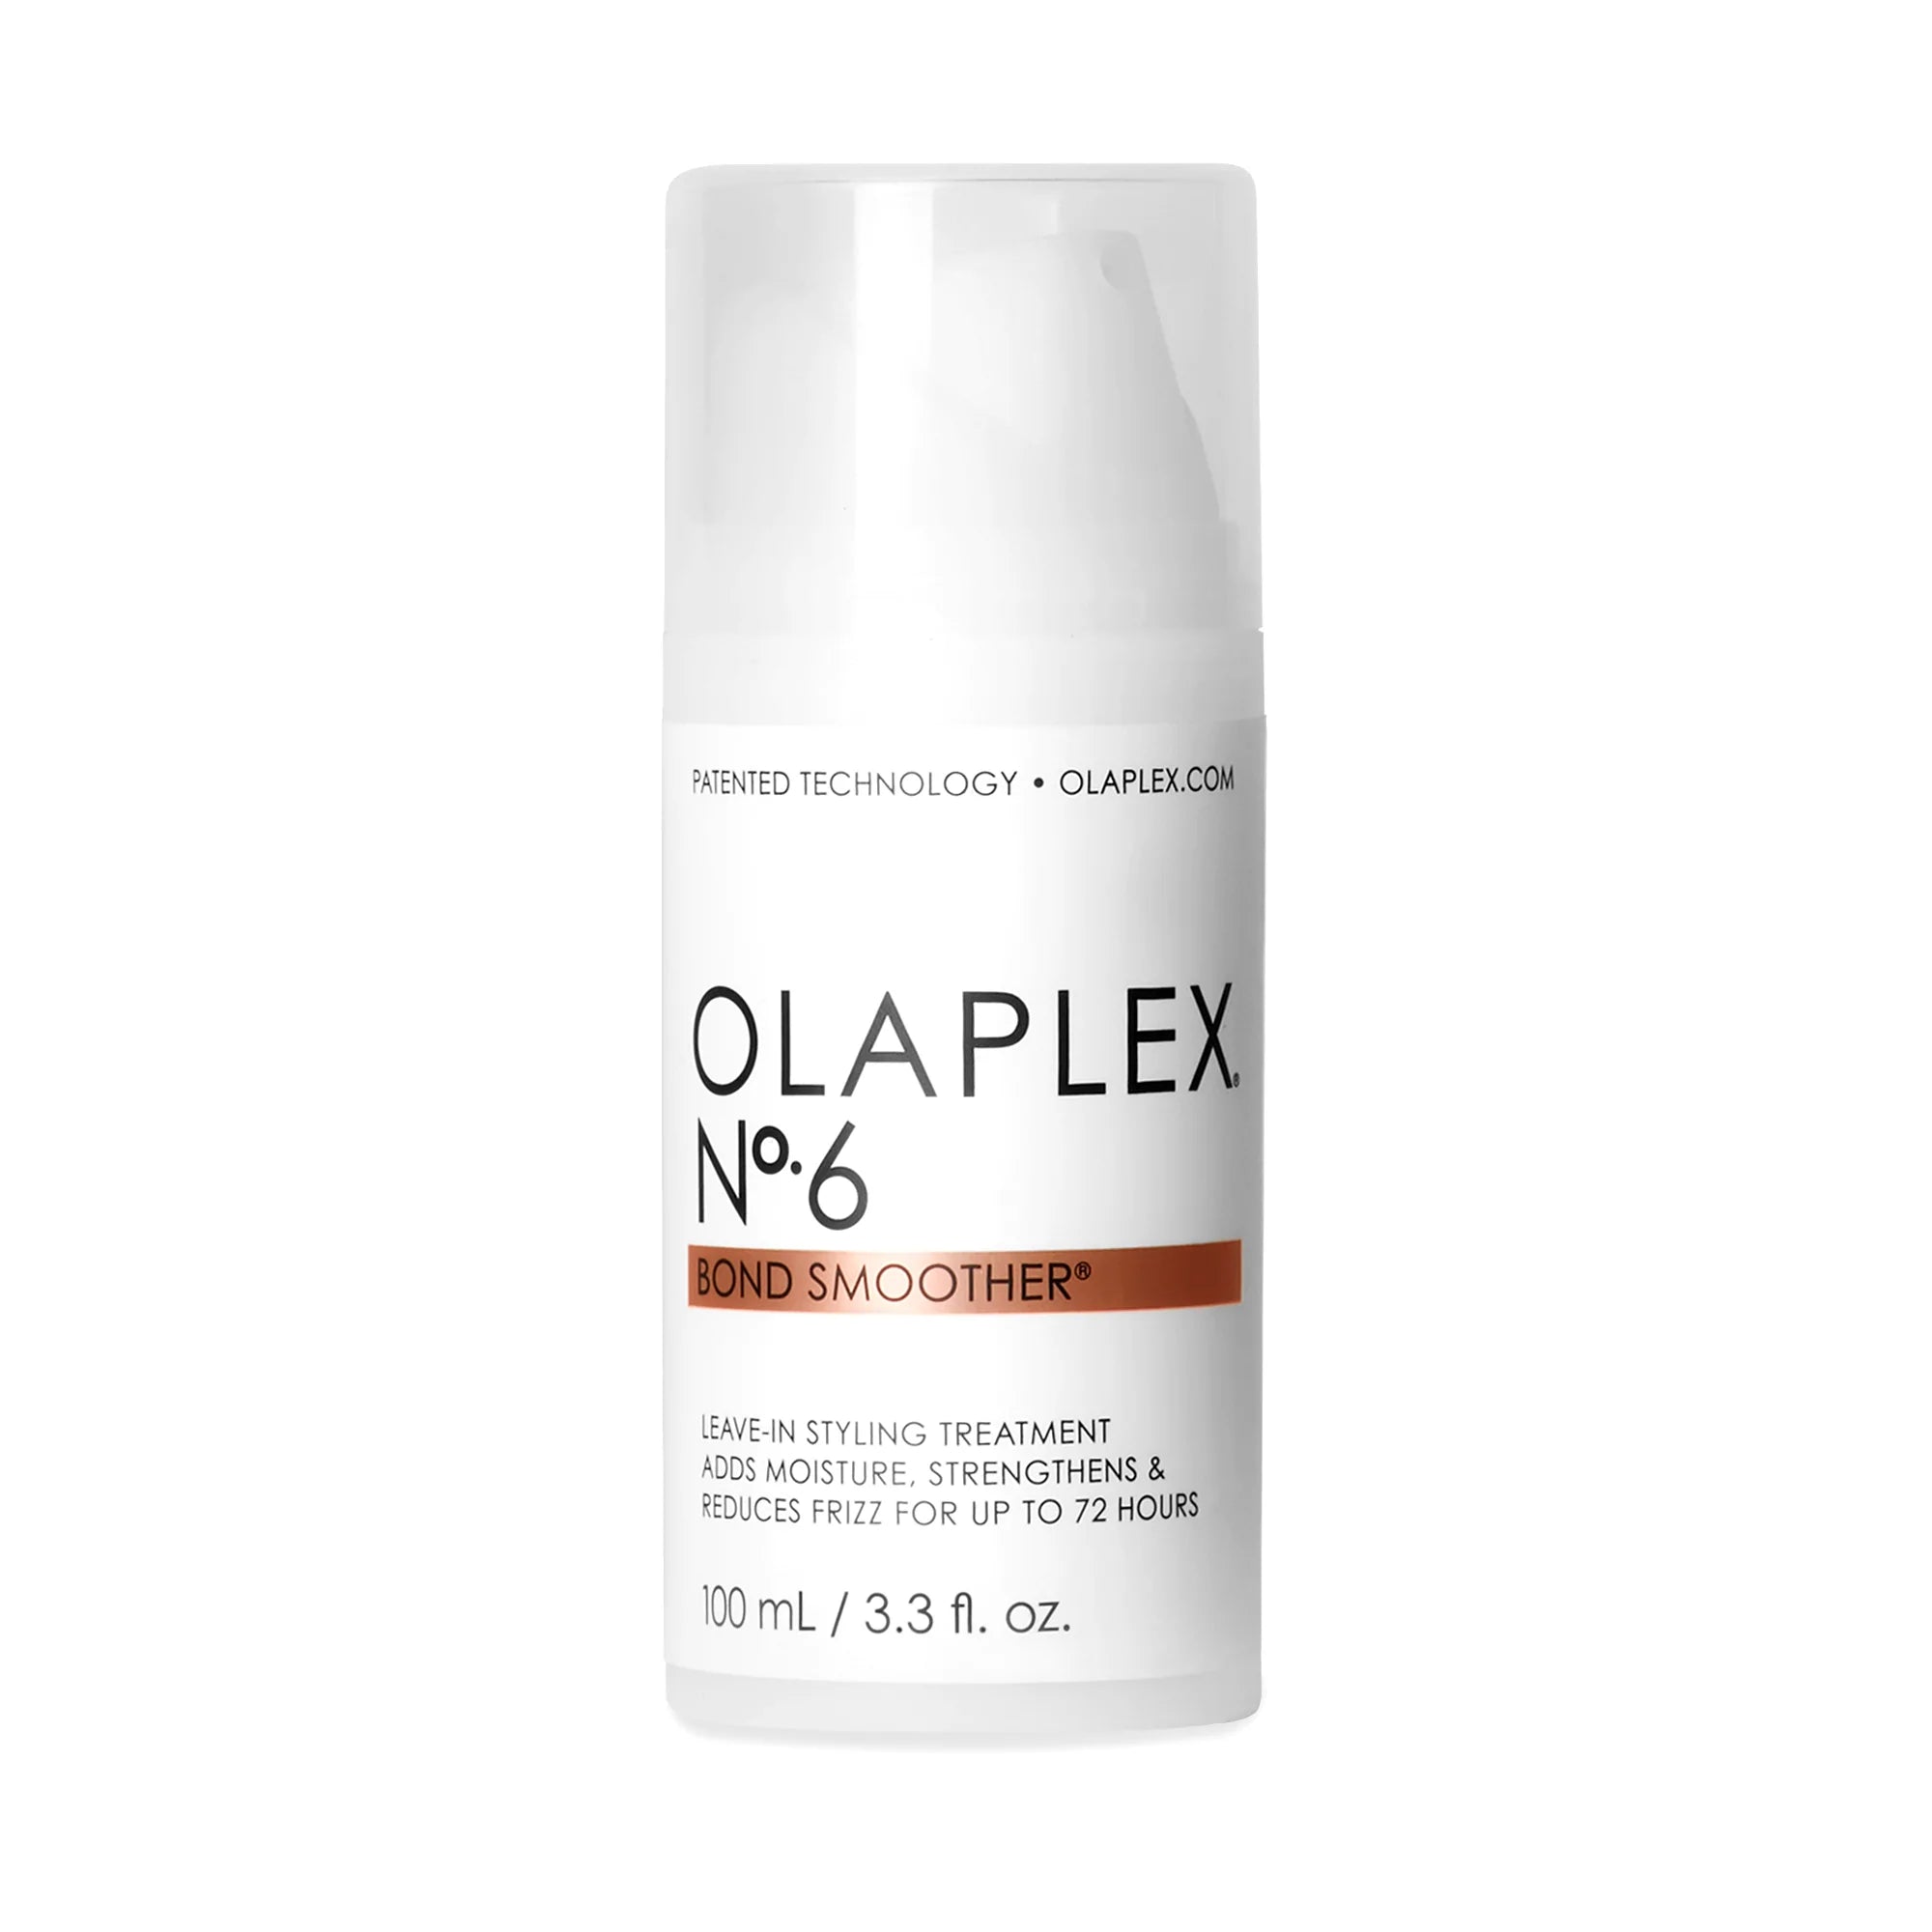 Truco OLAPLEX  Probando Olaplex nº 6 y nº 7 - España. 